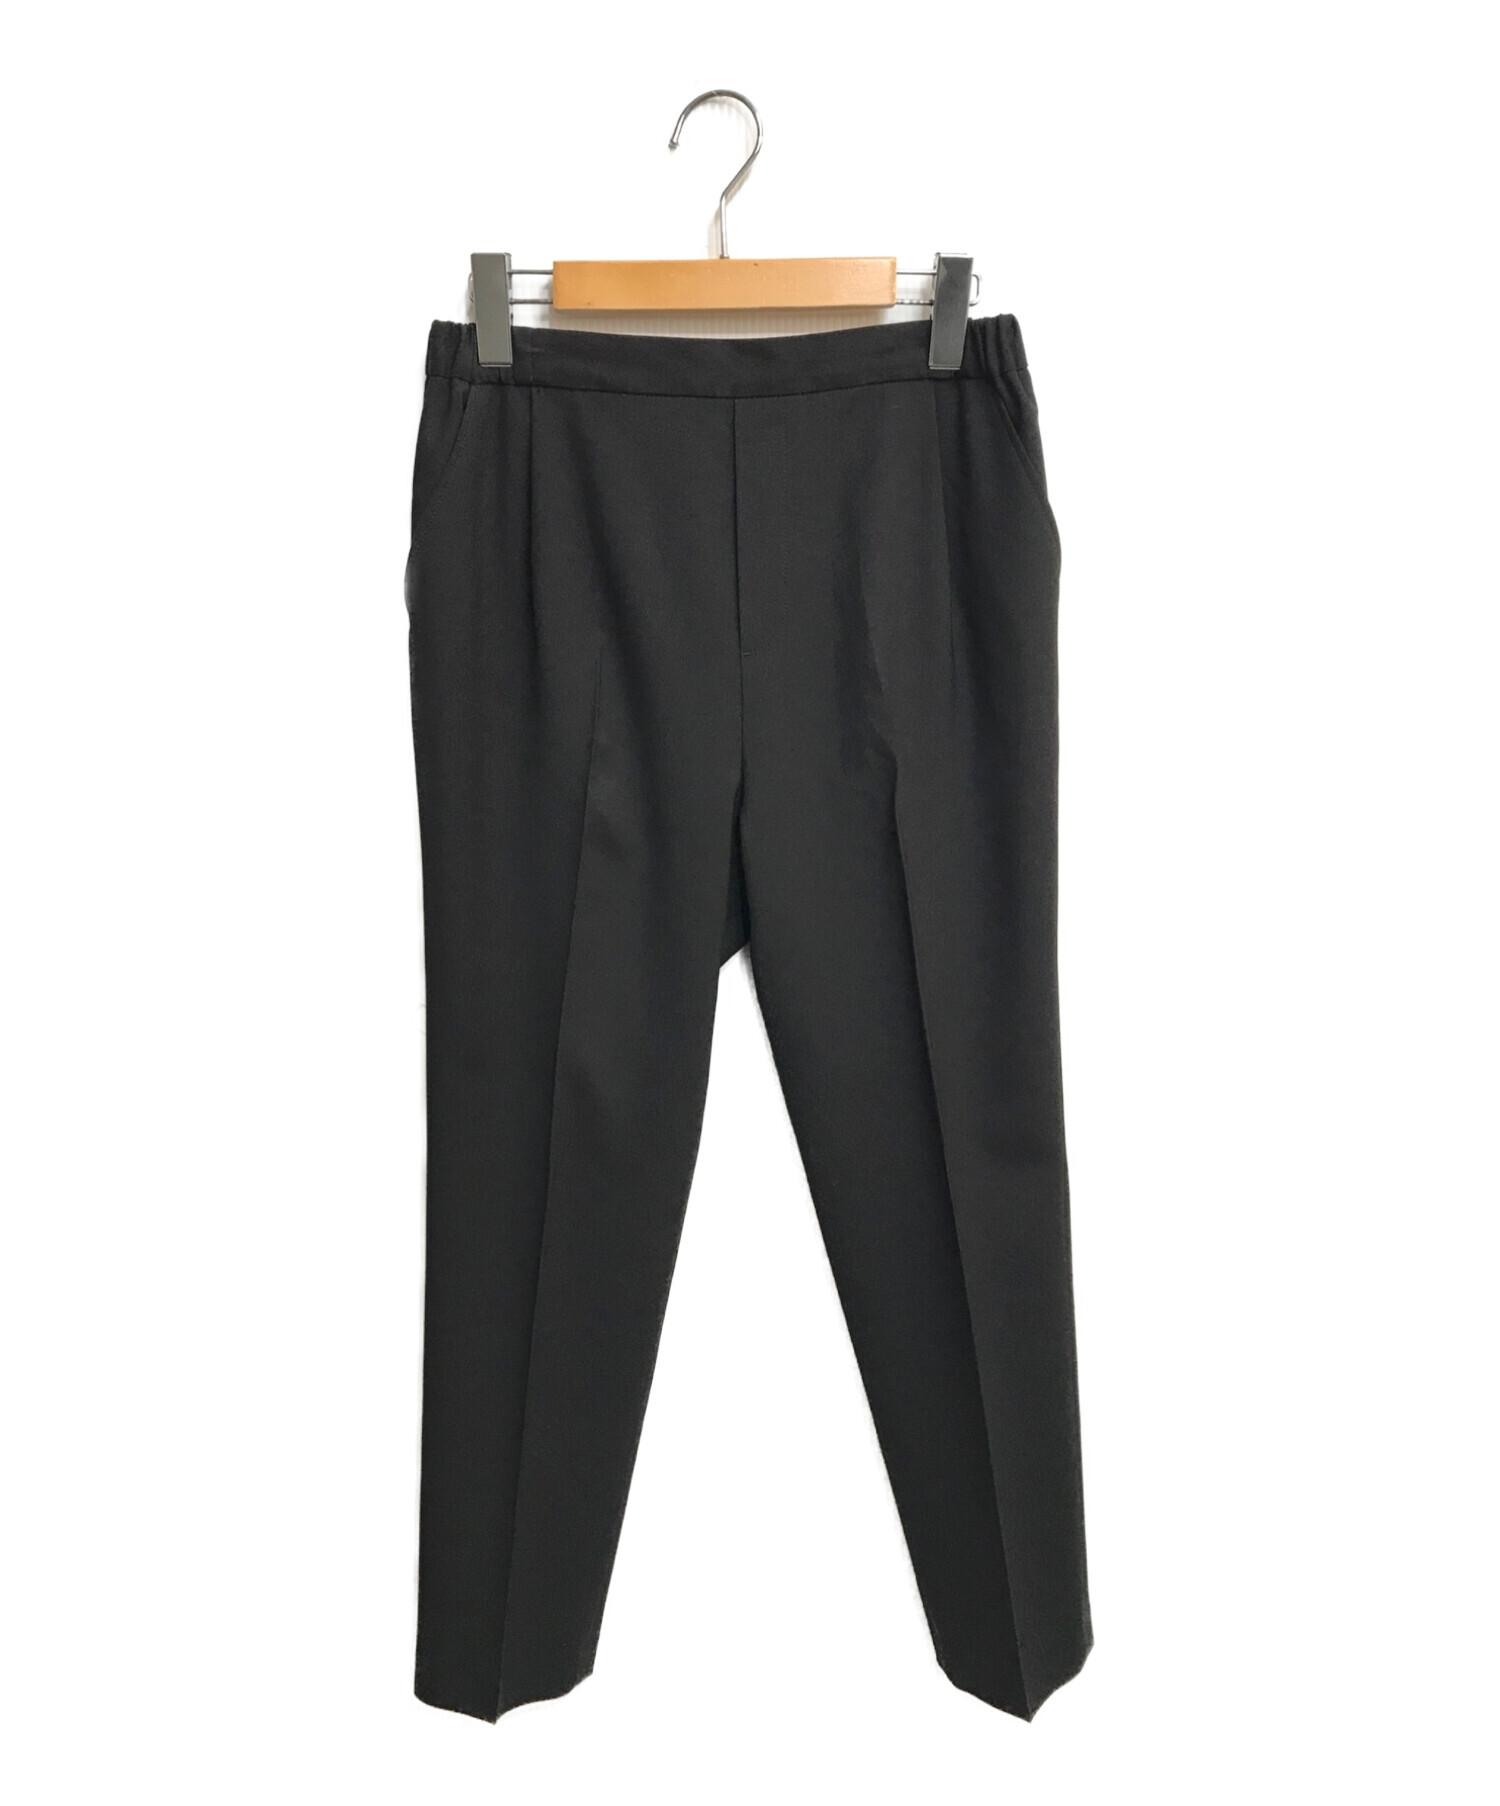 カリテqualiteパンツ黒ブラックサイズ1 - レディースファッション